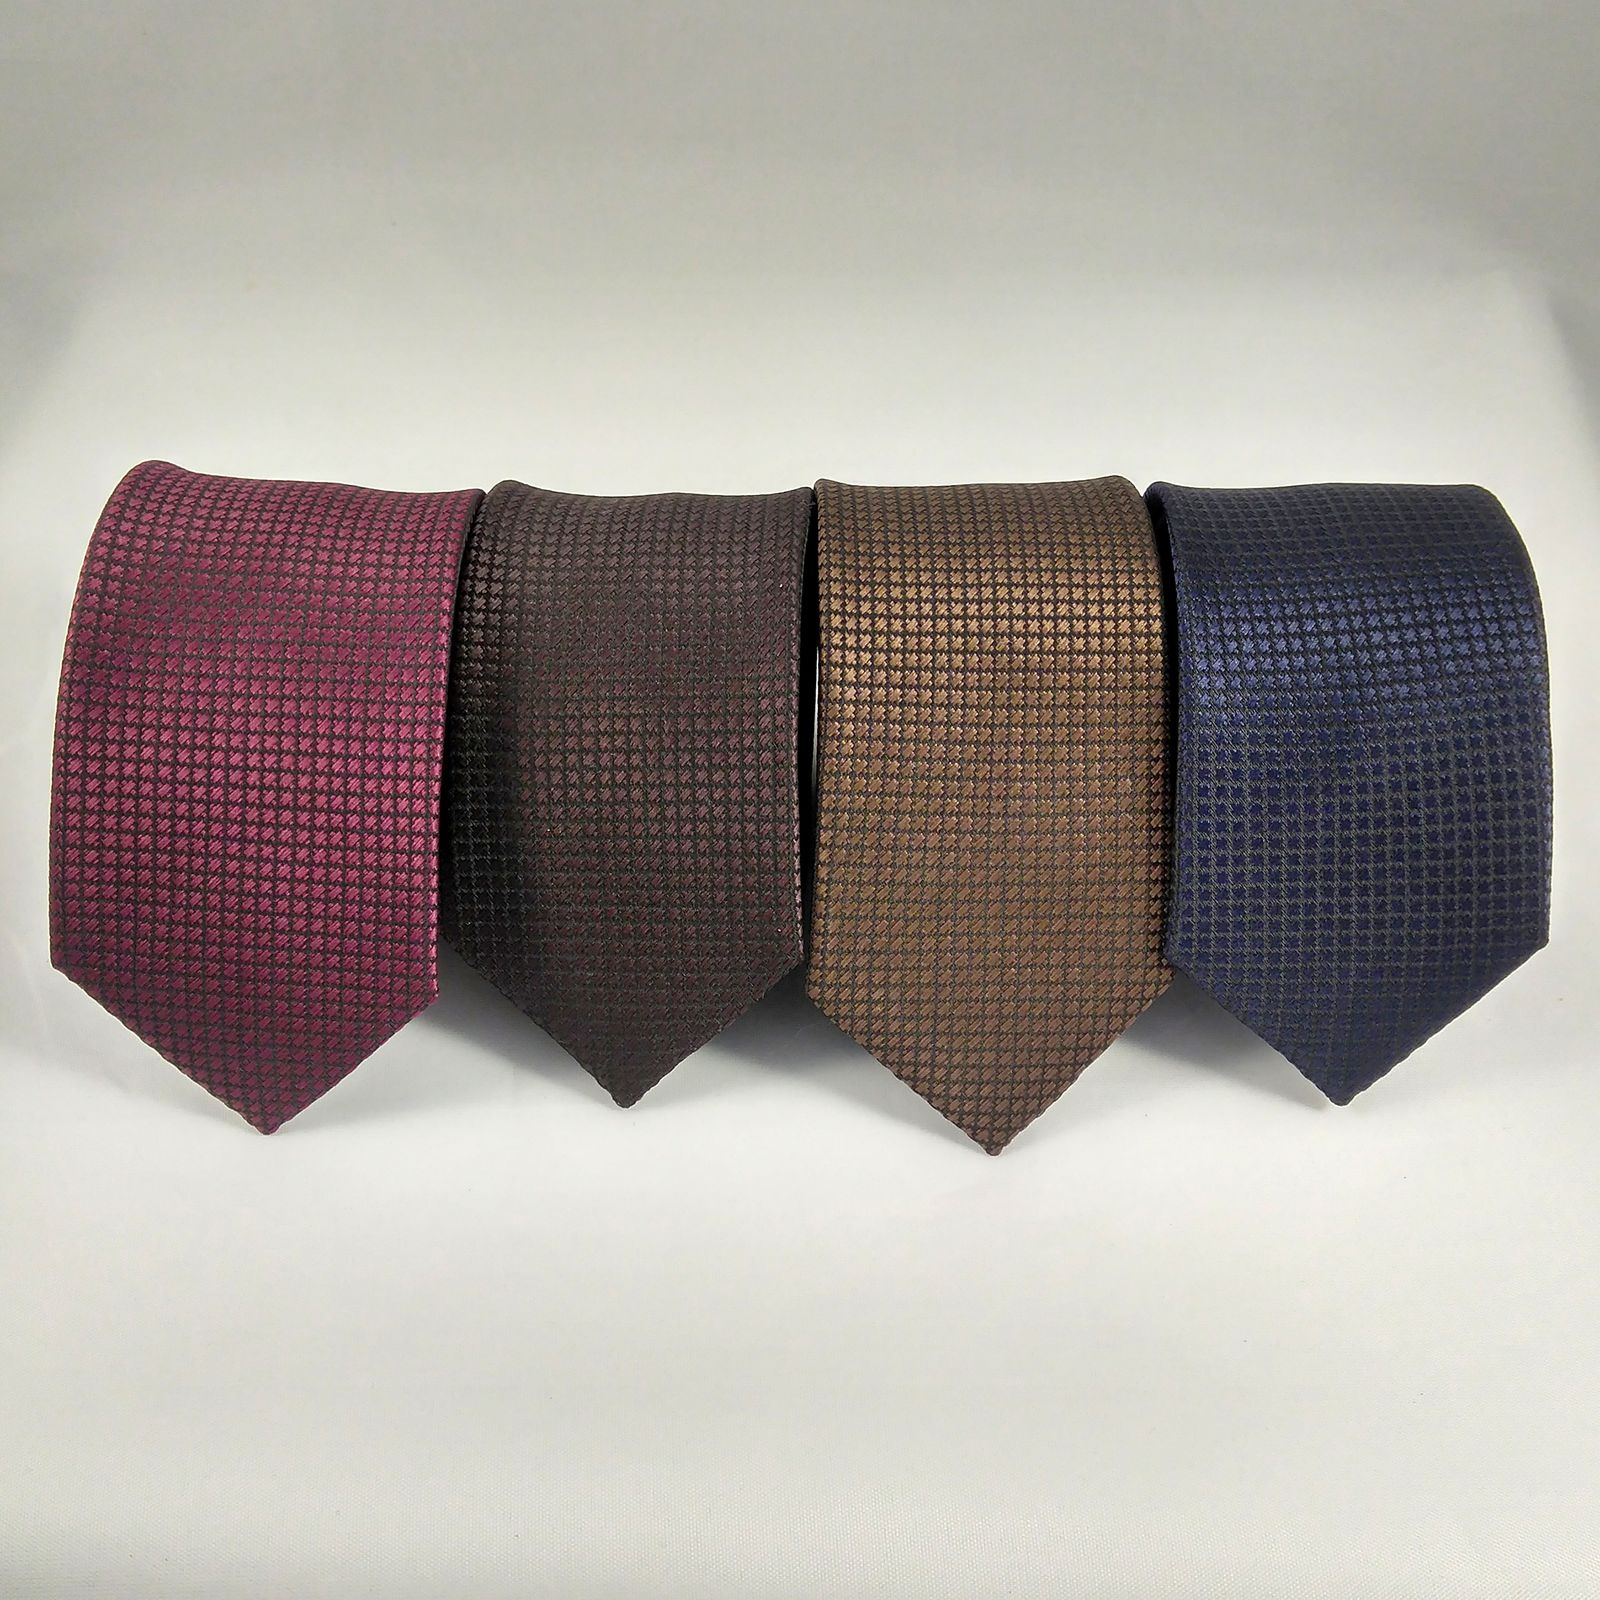 ست کراوات و دستمال جیب و دکمه سر دست مردانه کد 402 -  - 8